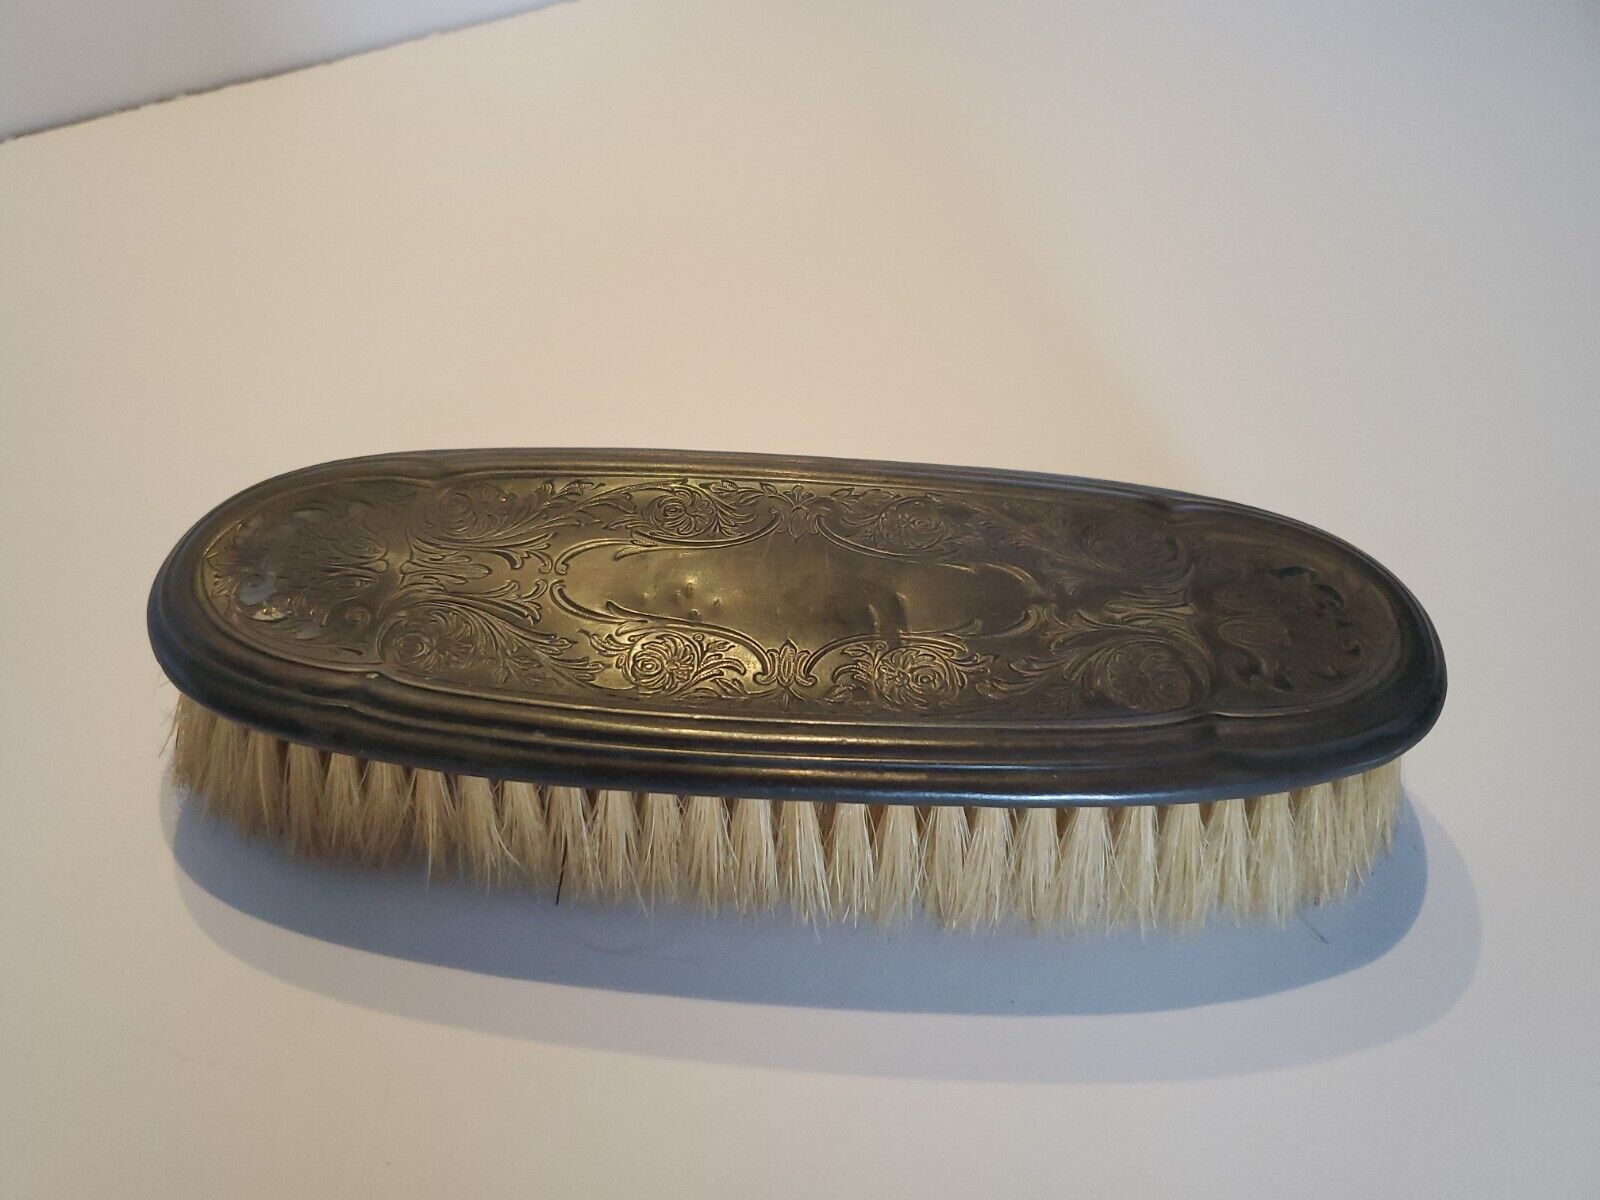 Vinyage 1920s Art Nouveau Gentalmans or Ladys Vanity Hair Garment Shoe Brush